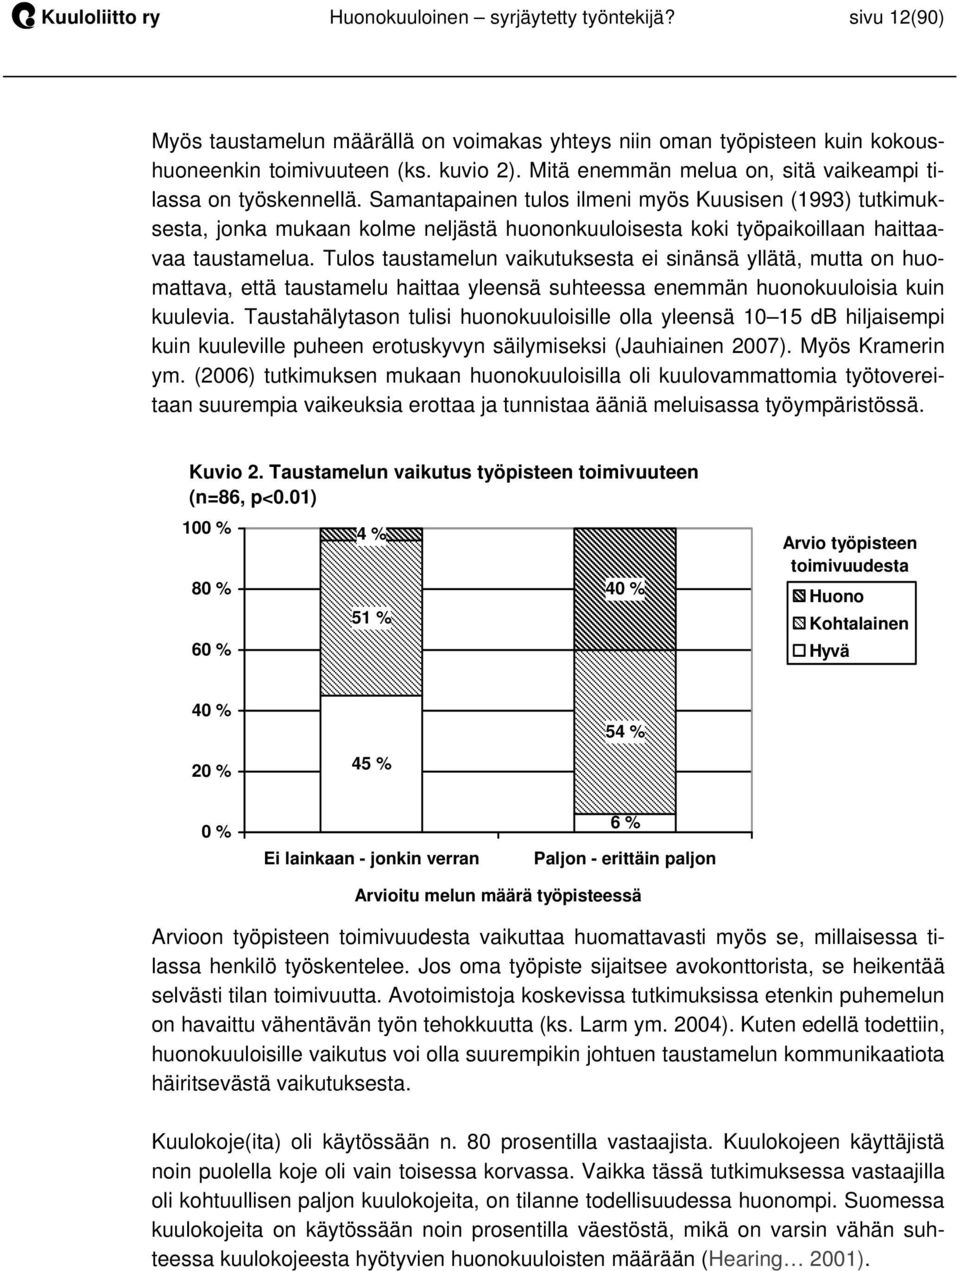 Samantapainen tulos ilmeni myös Kuusisen (1993) tutkimuksesta, jonka mukaan kolme neljästä huononkuuloisesta koki työpaikoillaan haittaavaa taustamelua.